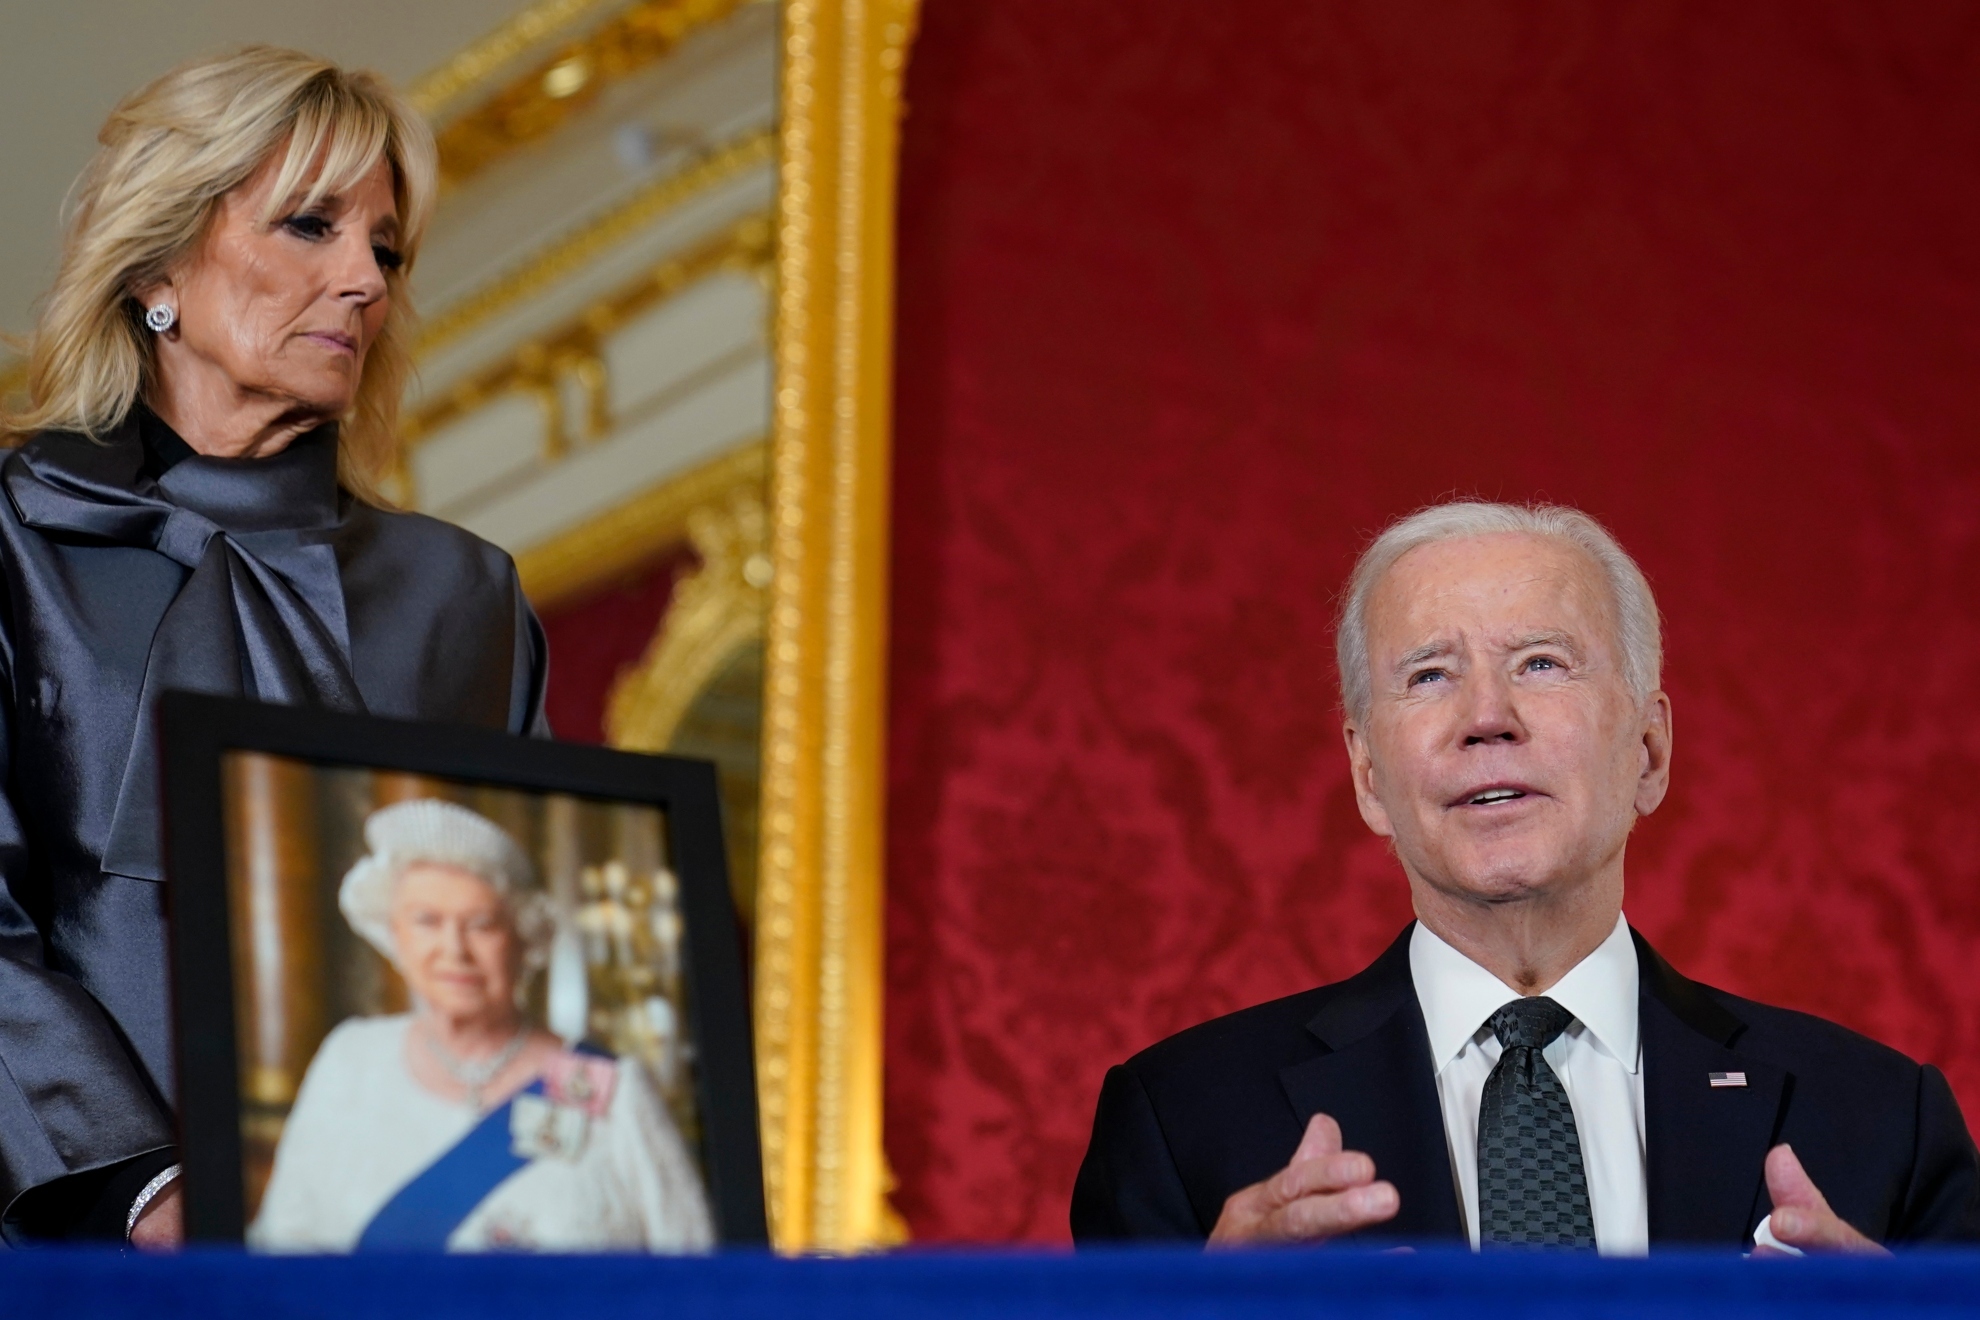 Joe and Jill Biden at Queen Elizabeth II memorial / AP